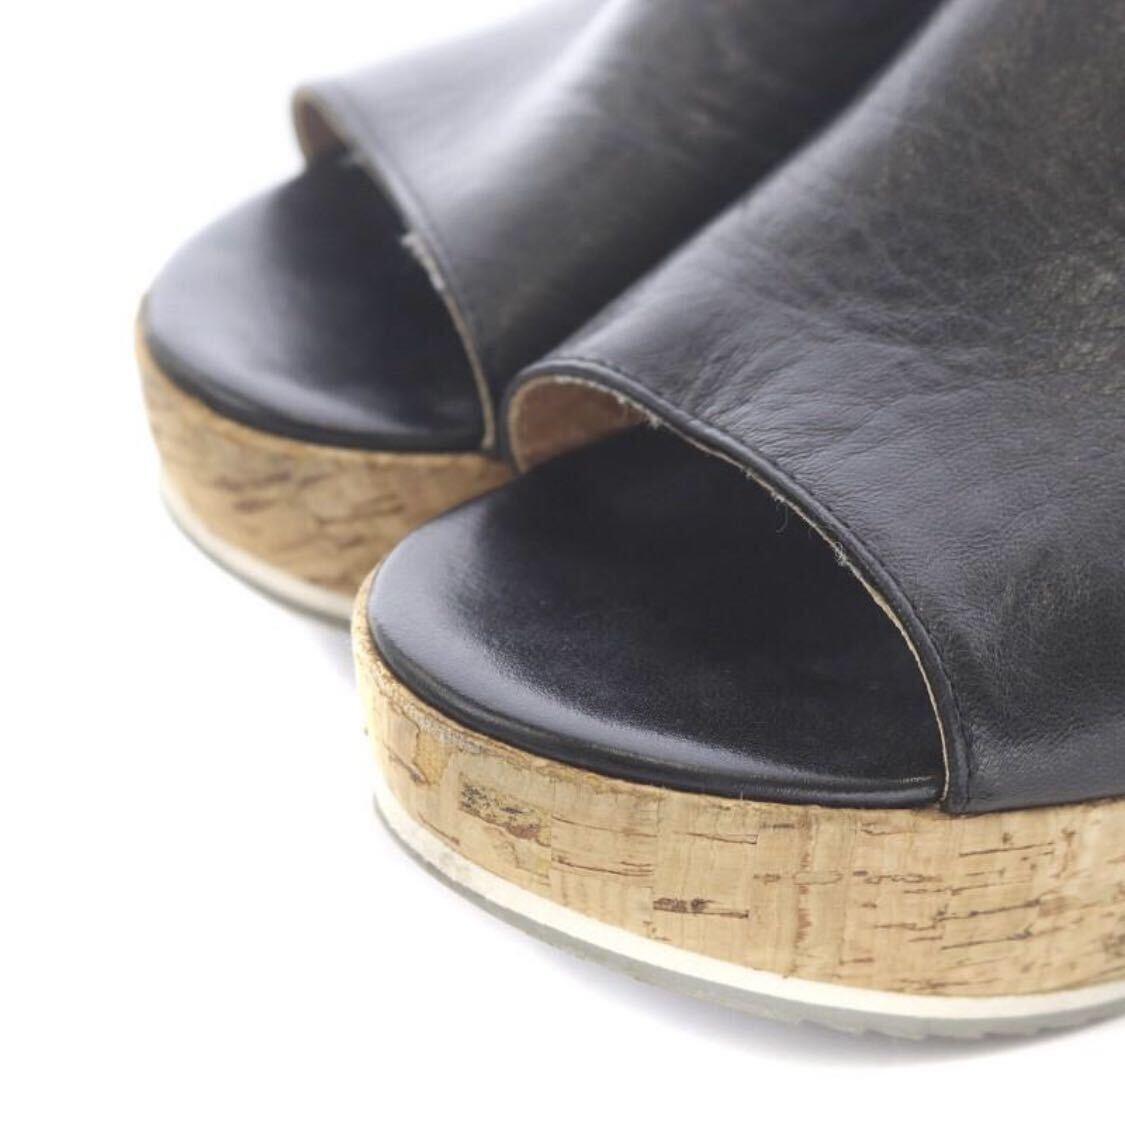 FABIO RUSCONI leather platform sandals original leather 